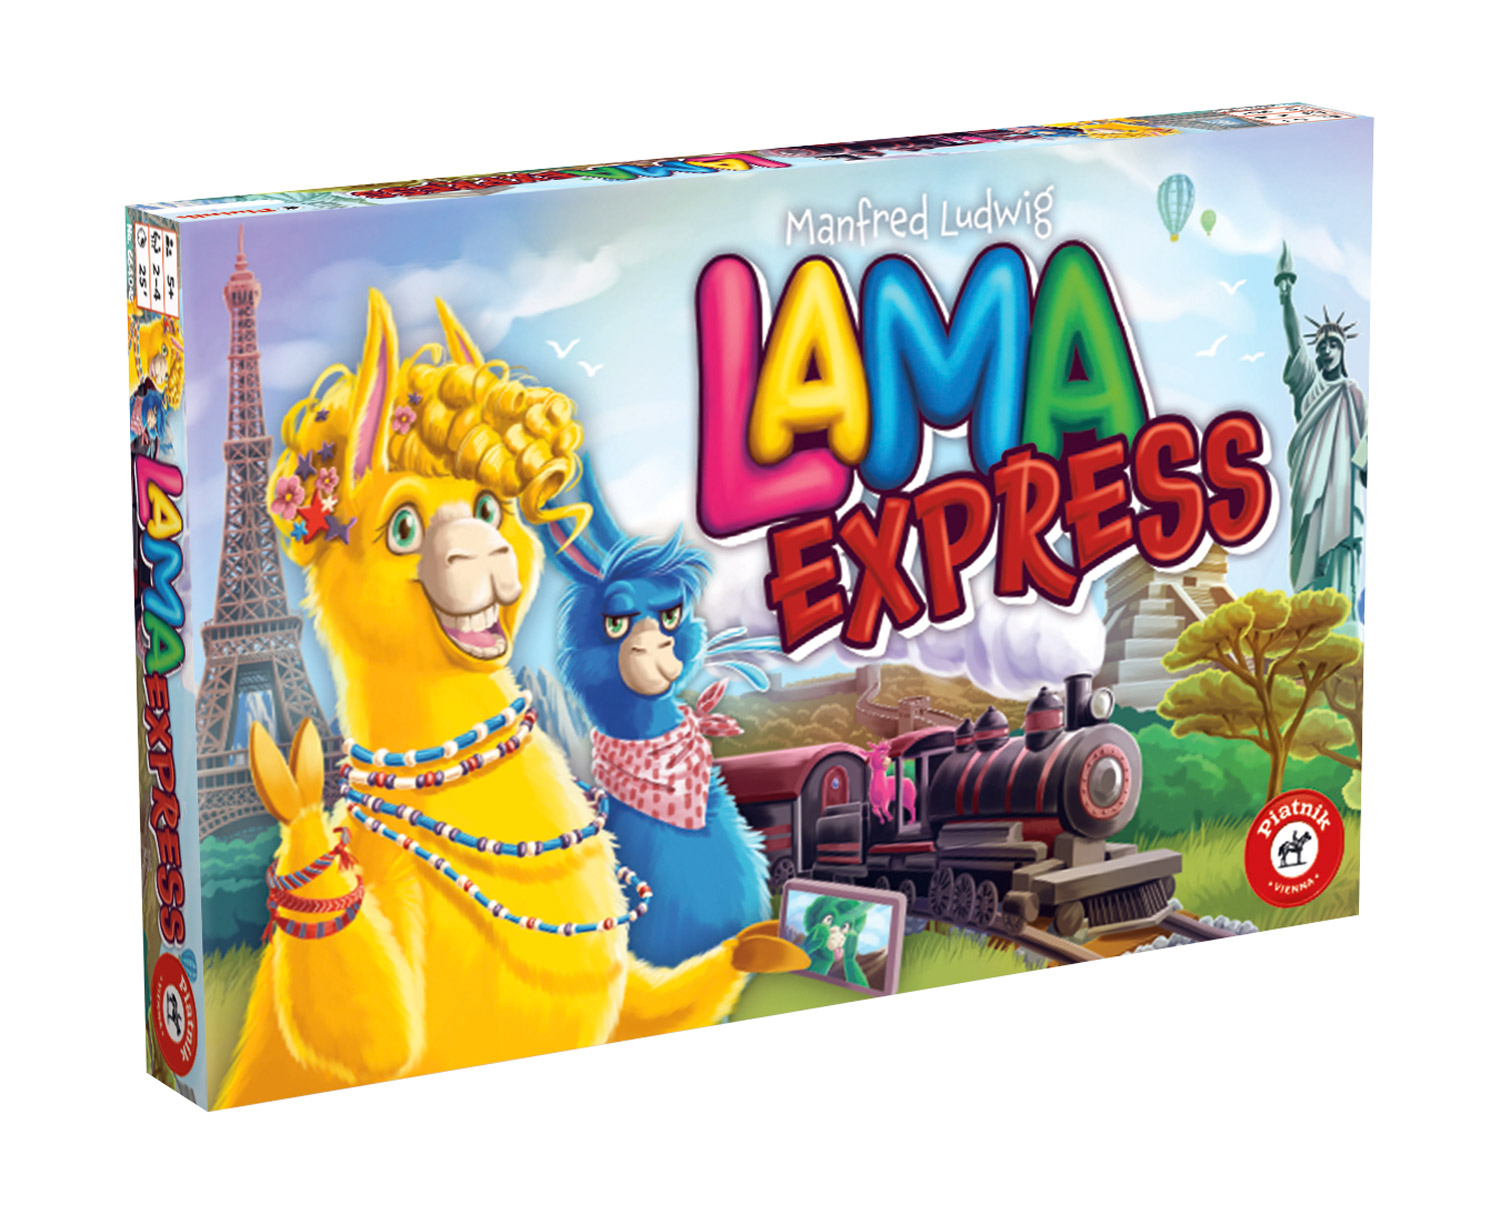 Lama Express